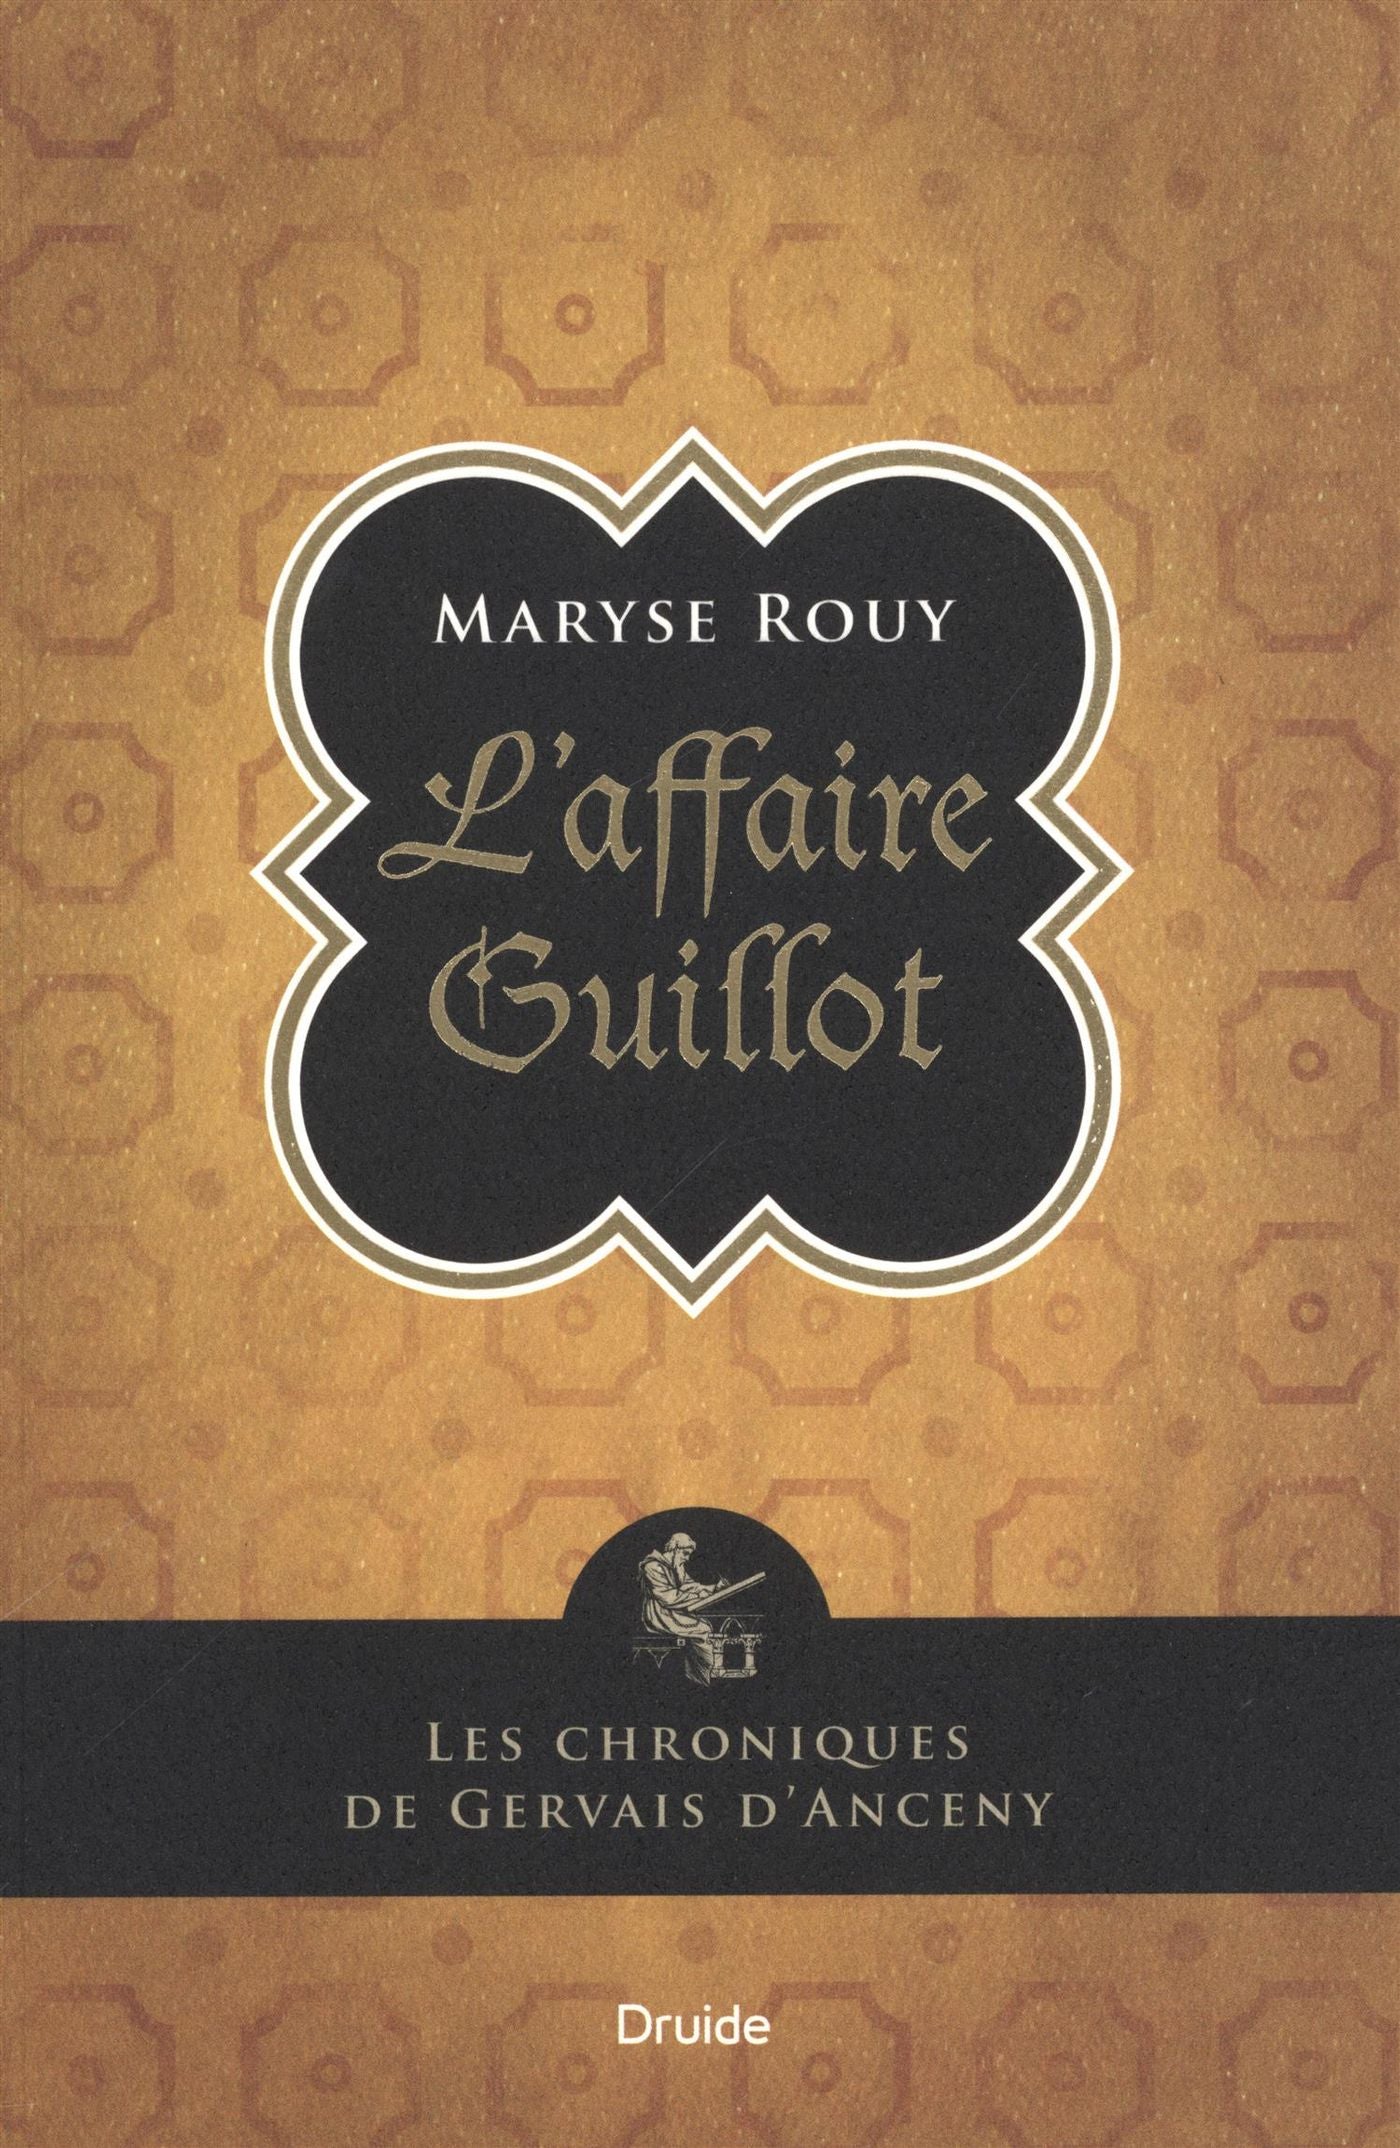 Les chroniques de Gervais d'Anceny : L'affaire Guillot - Maryse Rouy